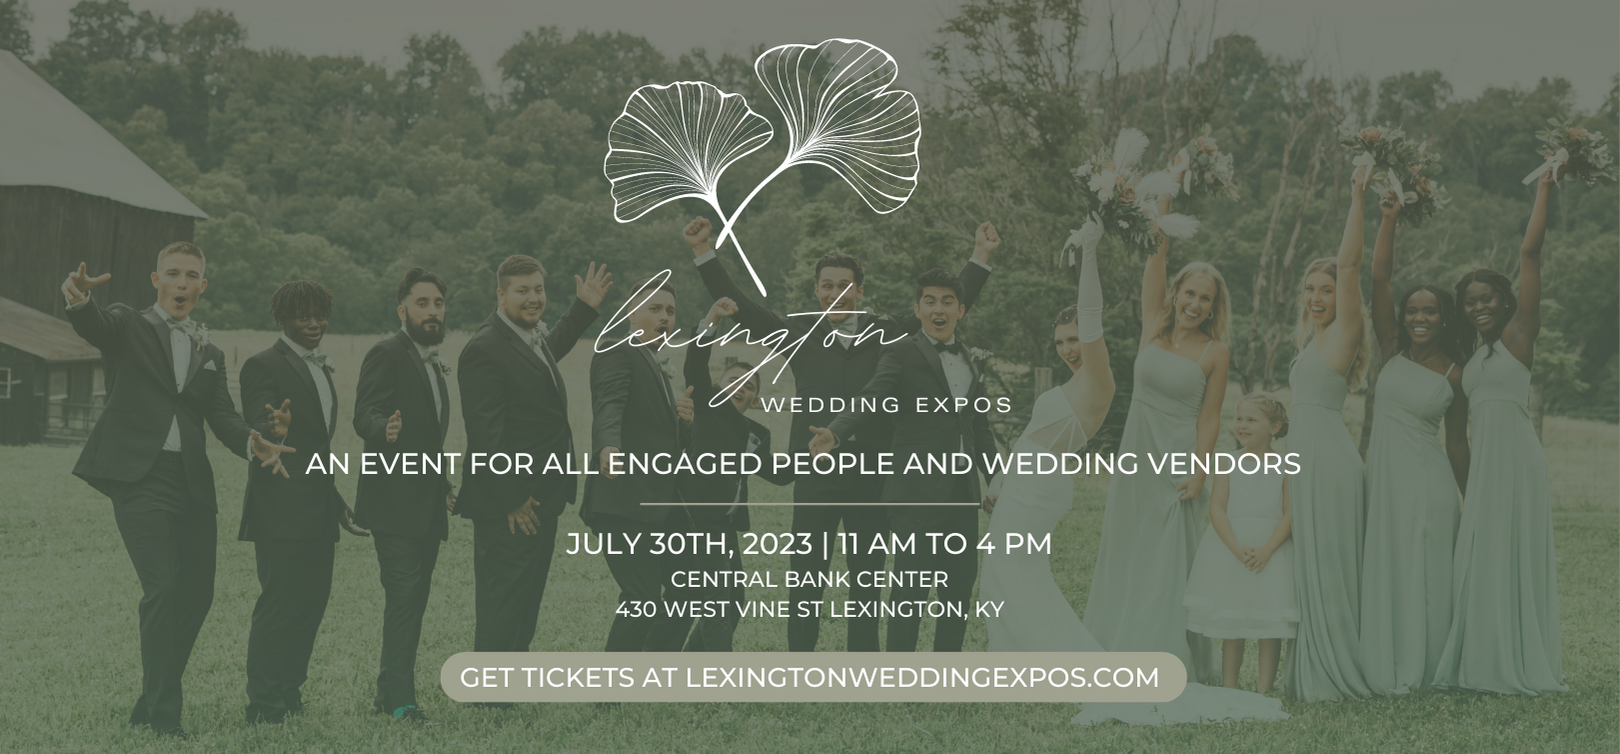 Lexington Wedding Expos